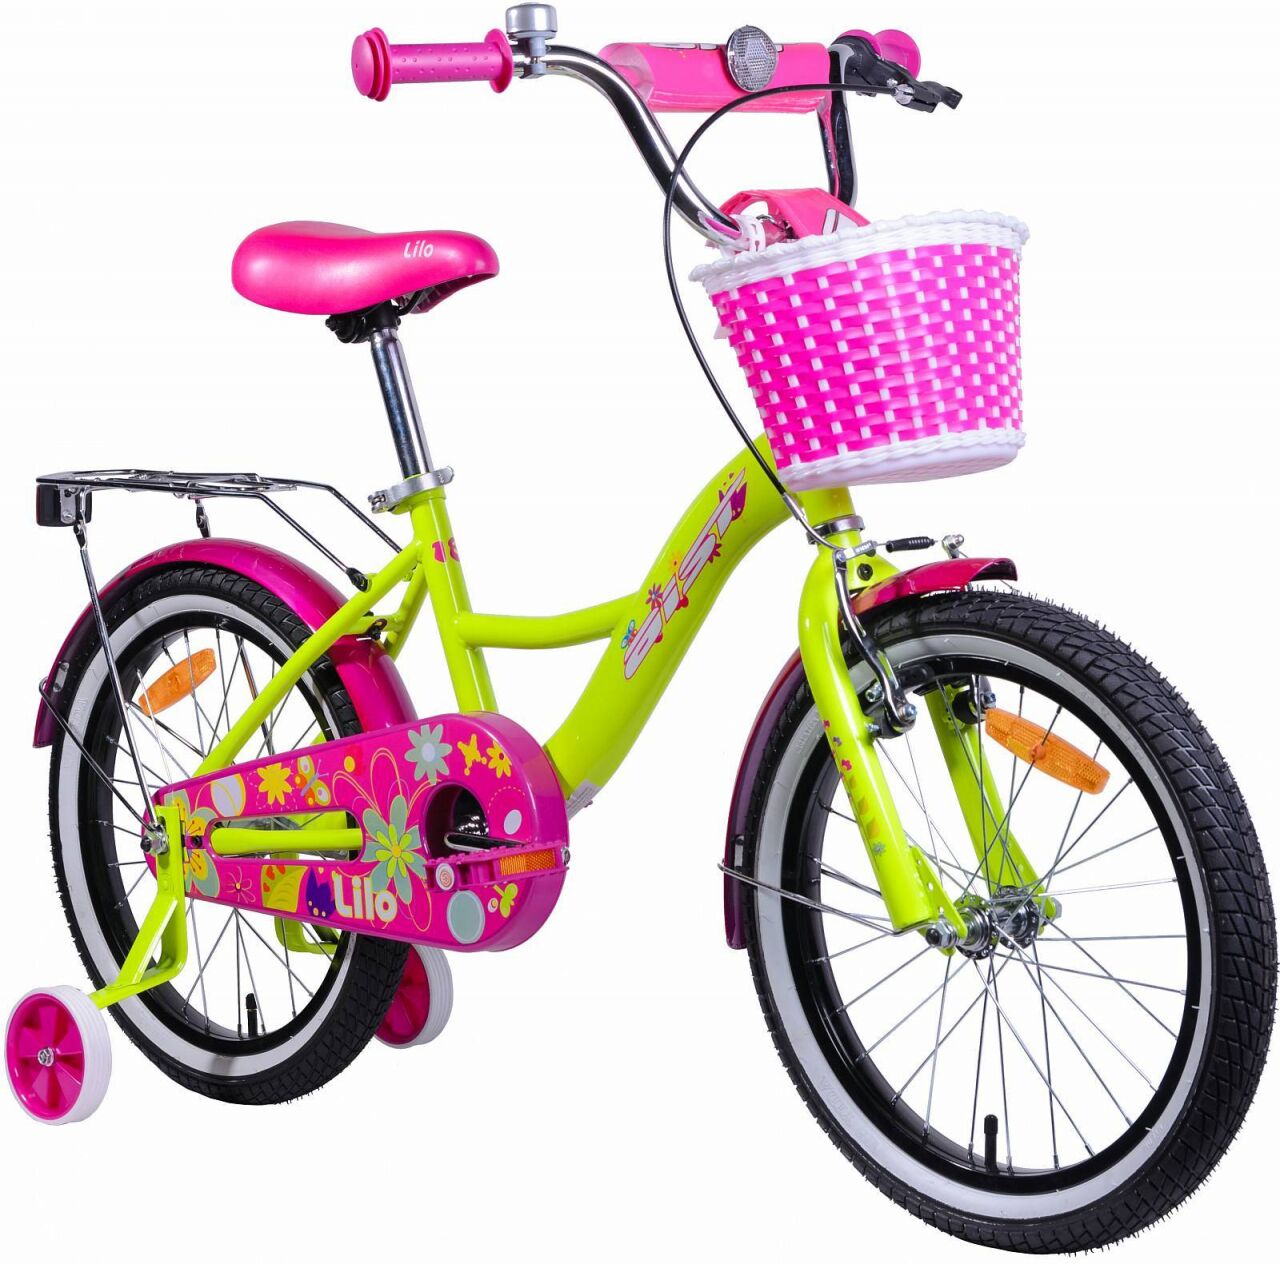 Детский велосипед Aist Lilo 18 (лимонный/розовый, 2020)